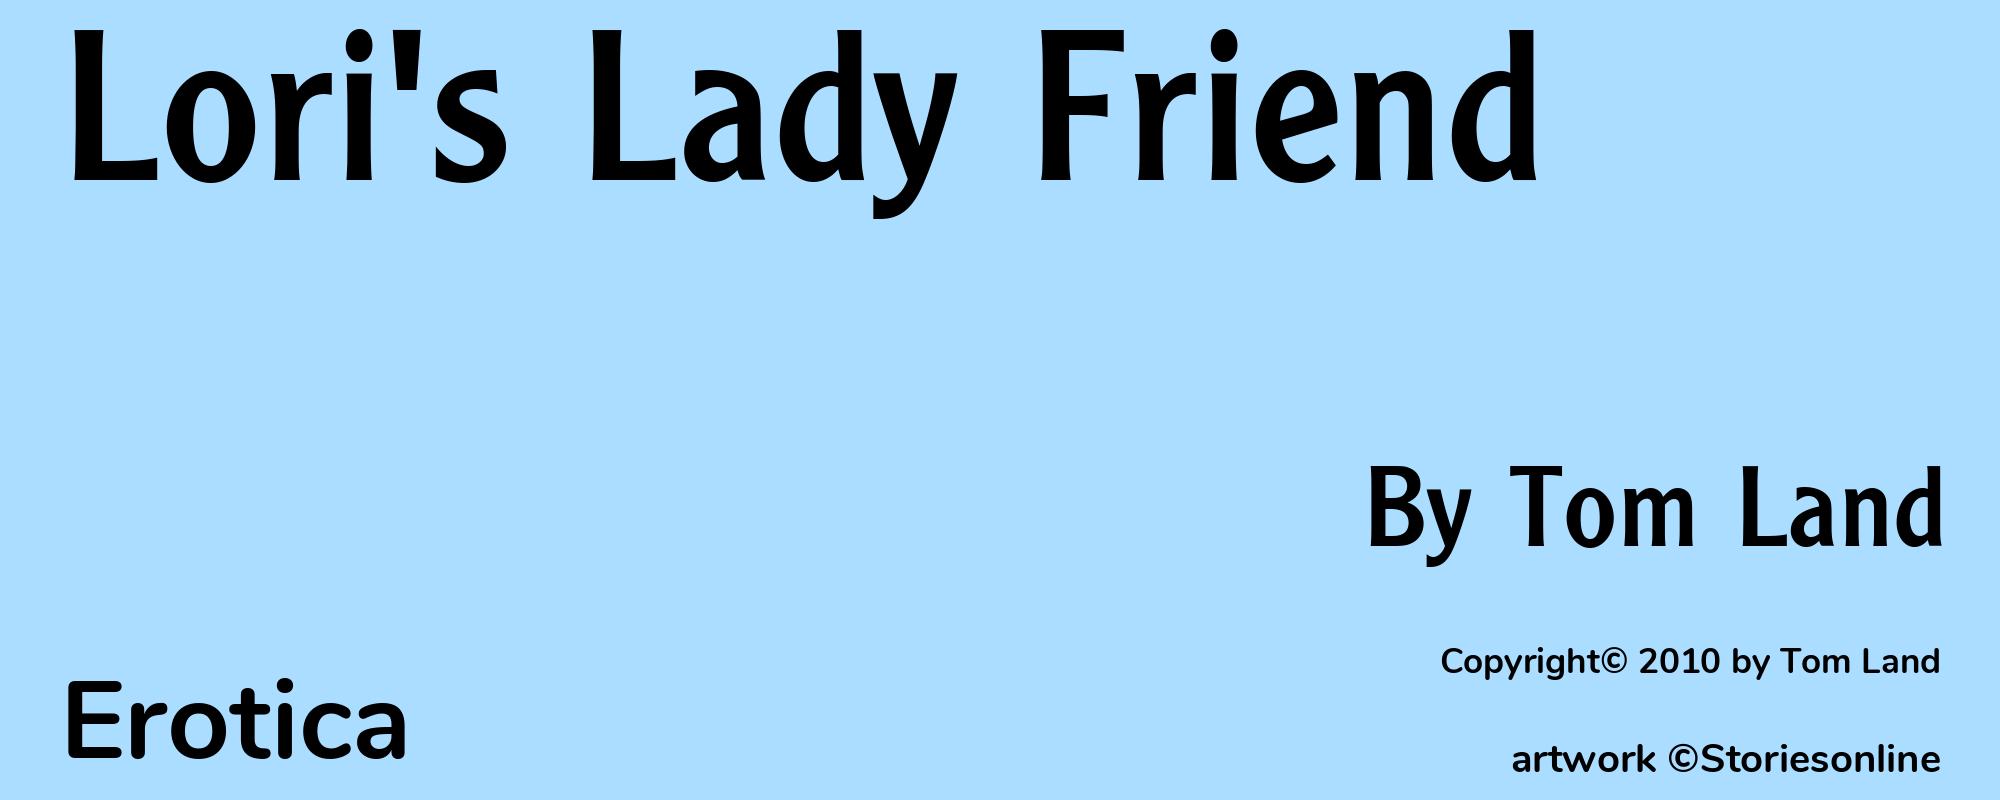 Lori's Lady Friend - Cover